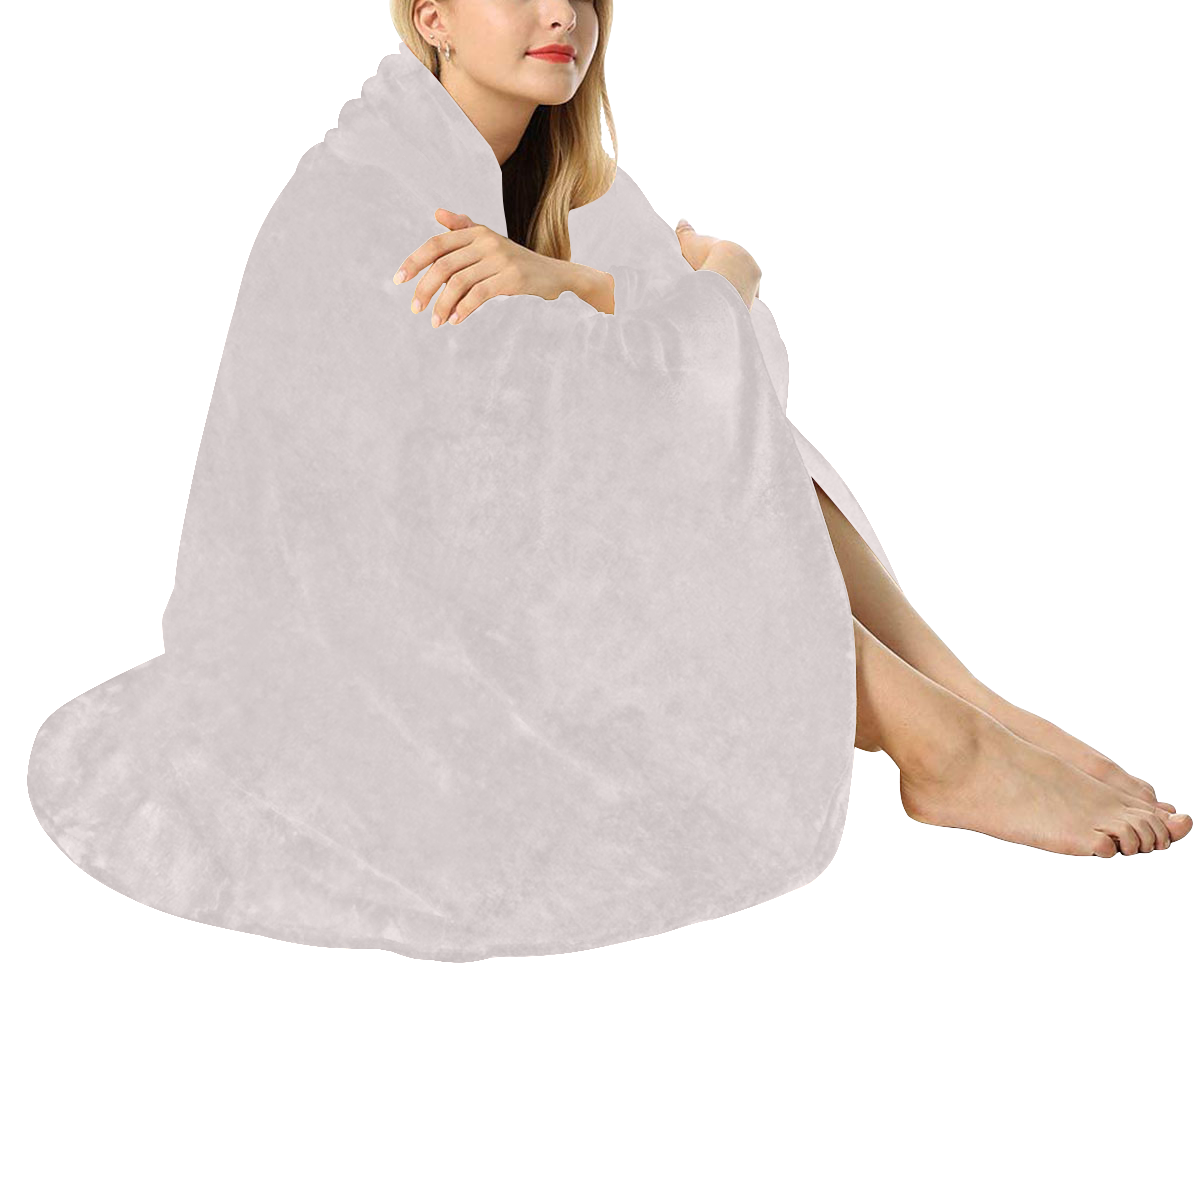 Circular Ultra-Soft Micro Fleece Blanket 47"